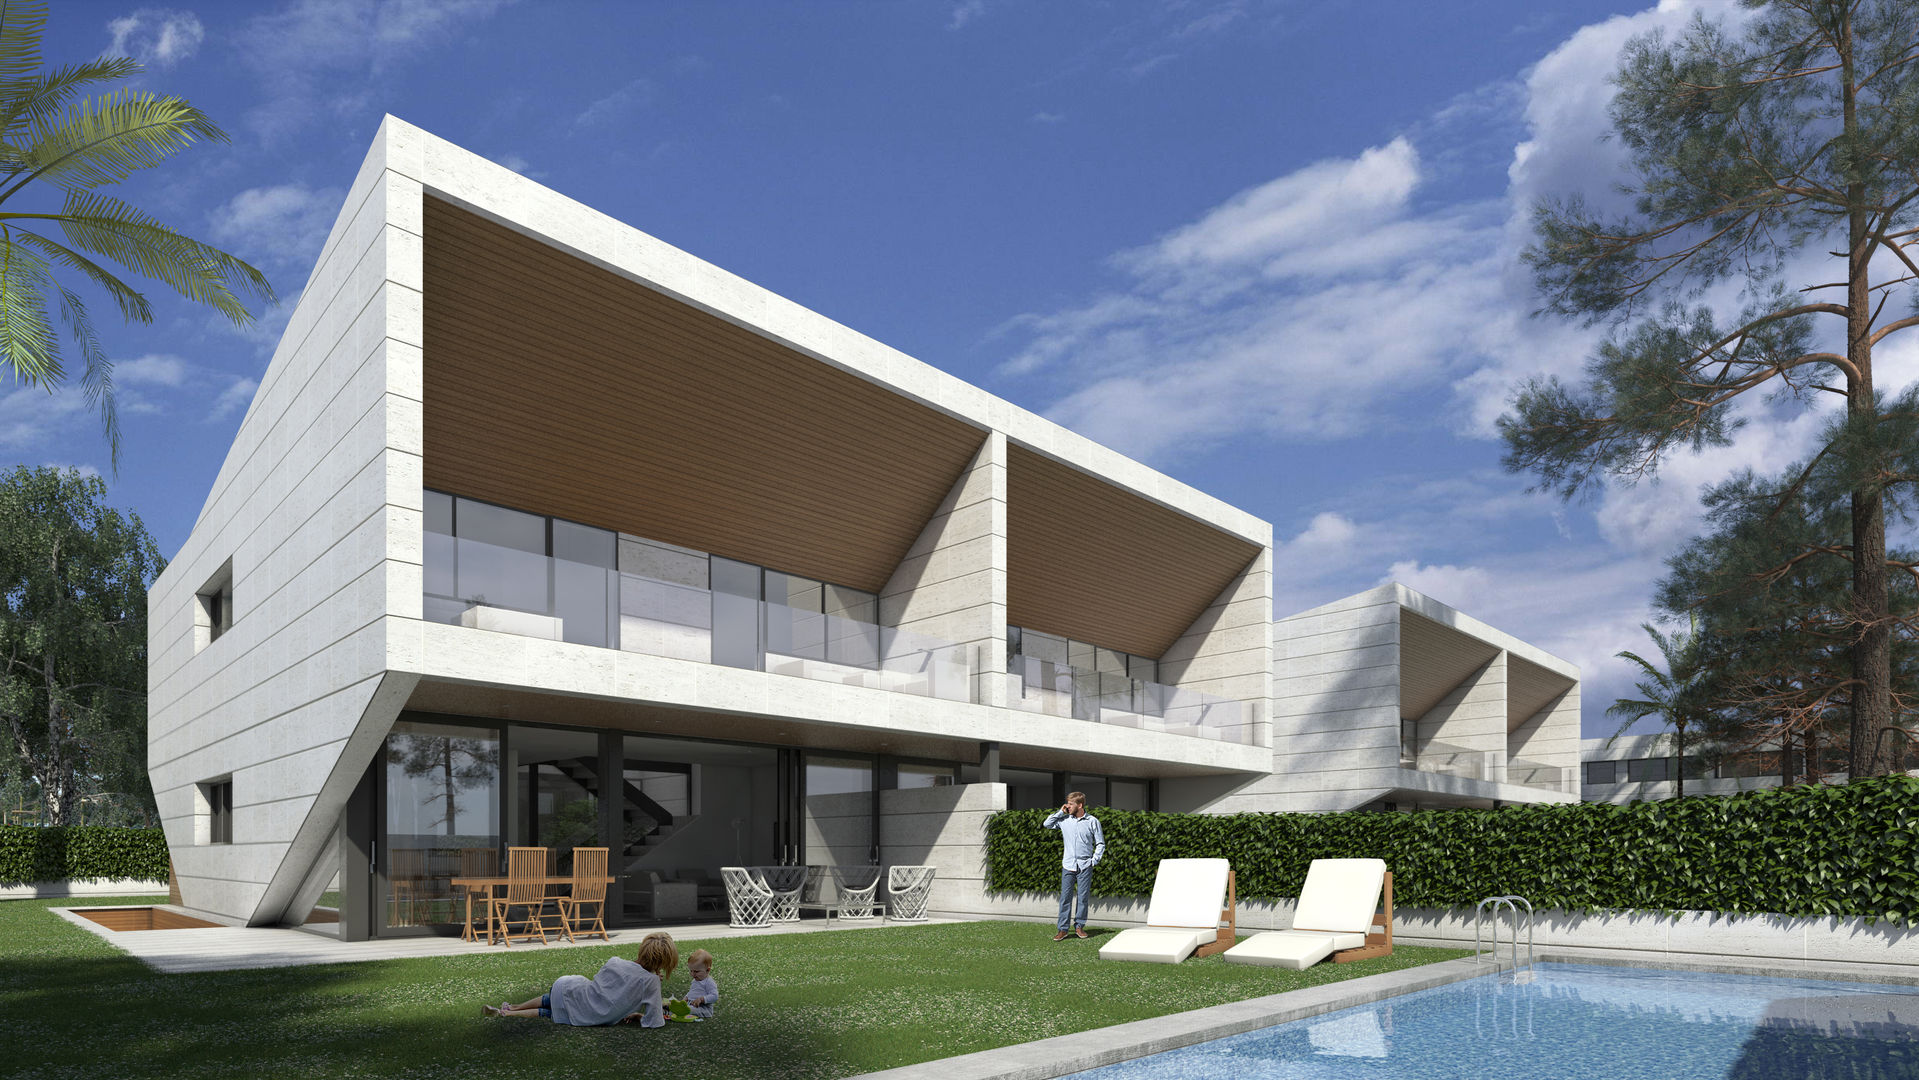 Promoción viviendas pareadas, ARQZONE 3D+Design Studio ARQZONE 3D+Design Studio منازل حجر جيري